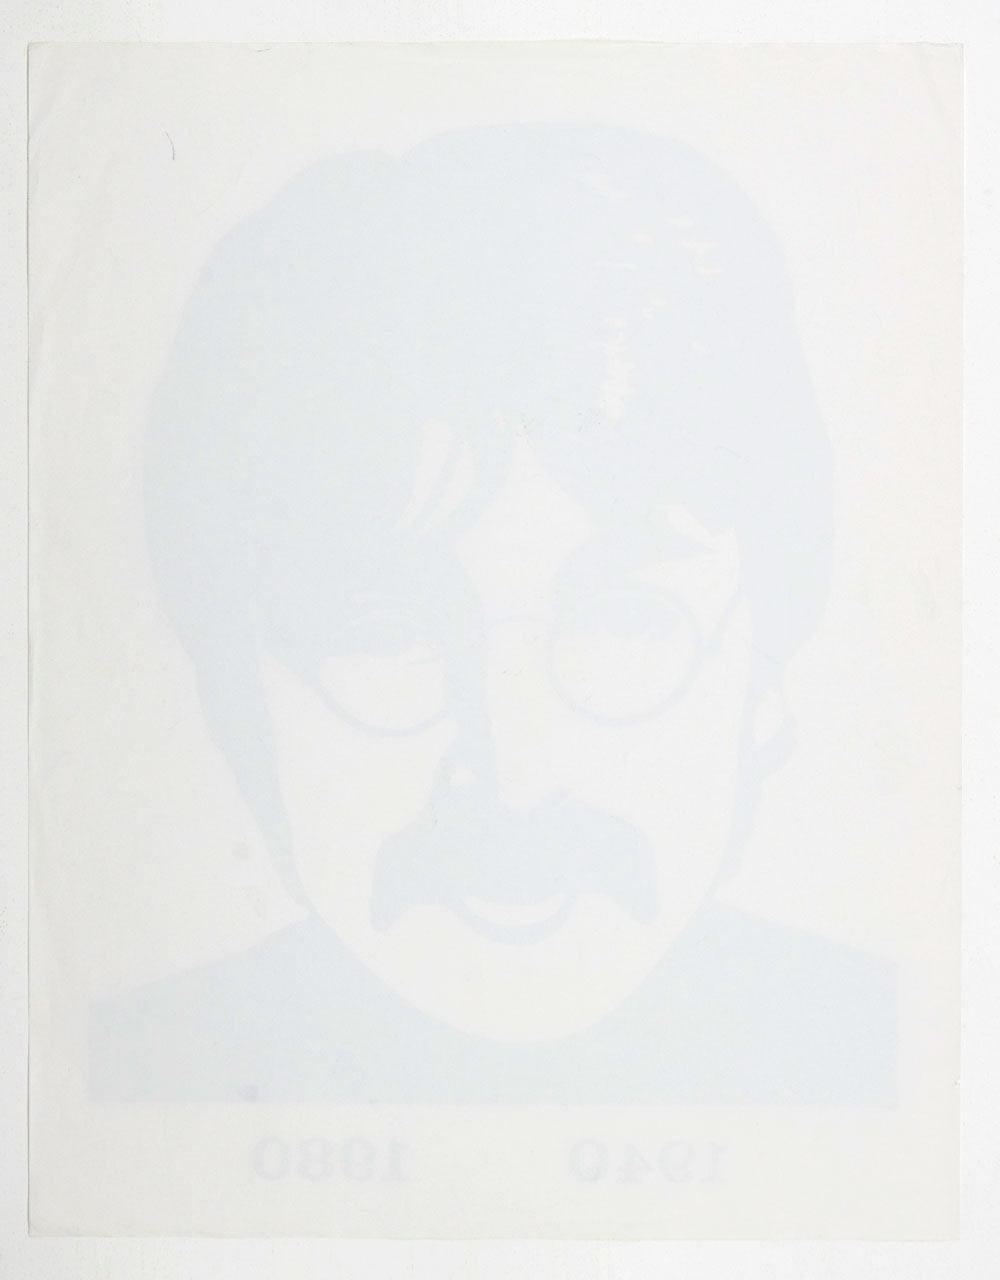 John Lennon Poster 1940 - 1980 17.5 x 22.5